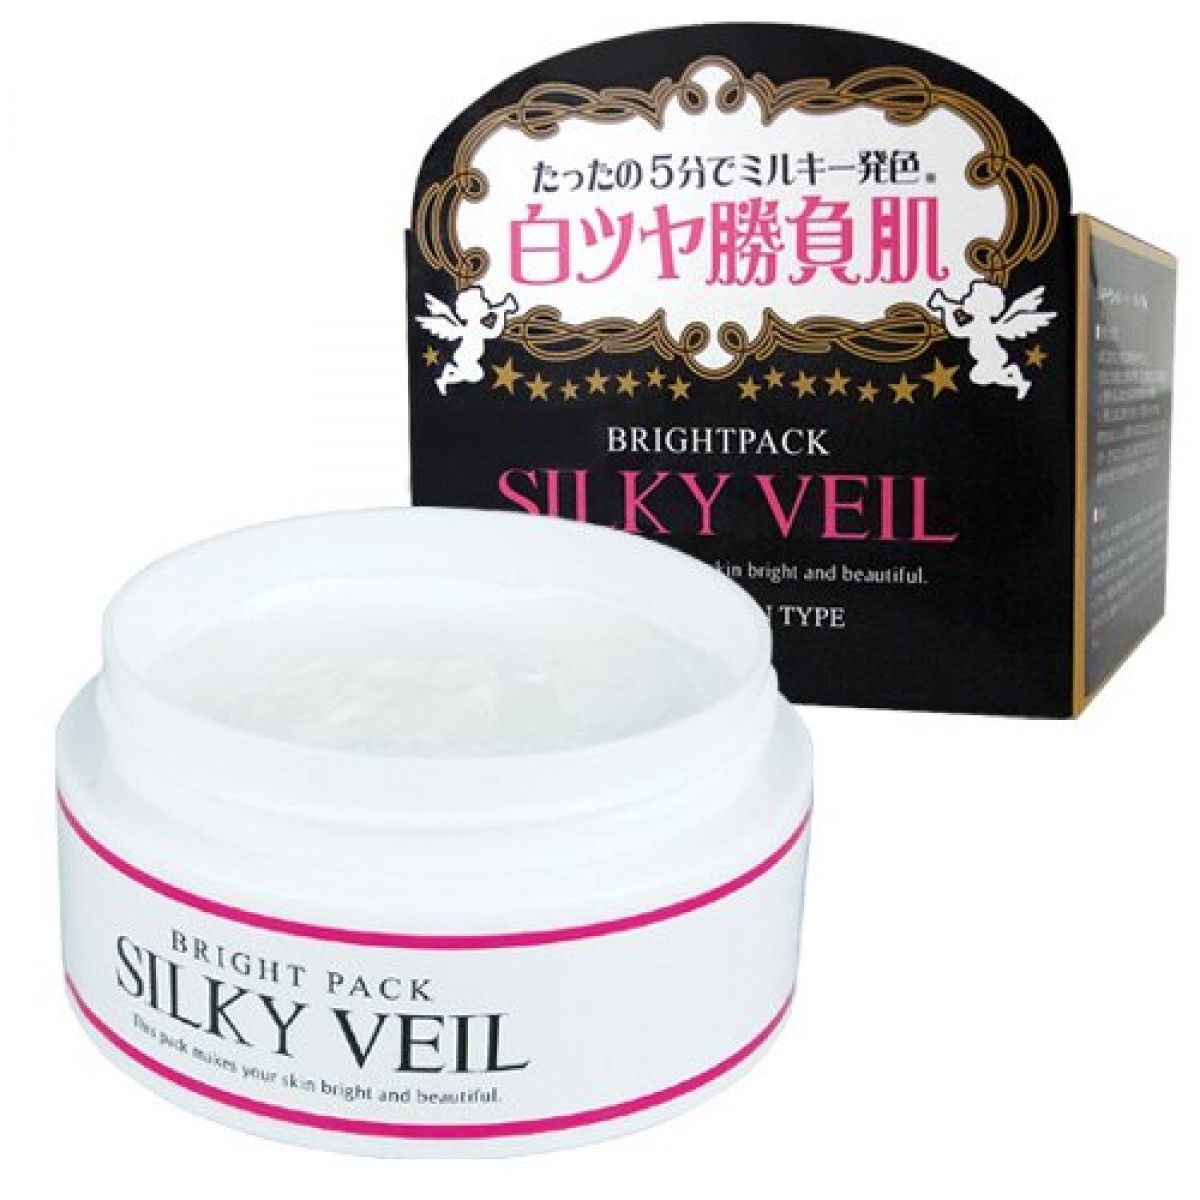 Kem trắng da Silky Veil dưỡng trắng toàn thân, là dòng sản phẩm cao cấp của Nhật